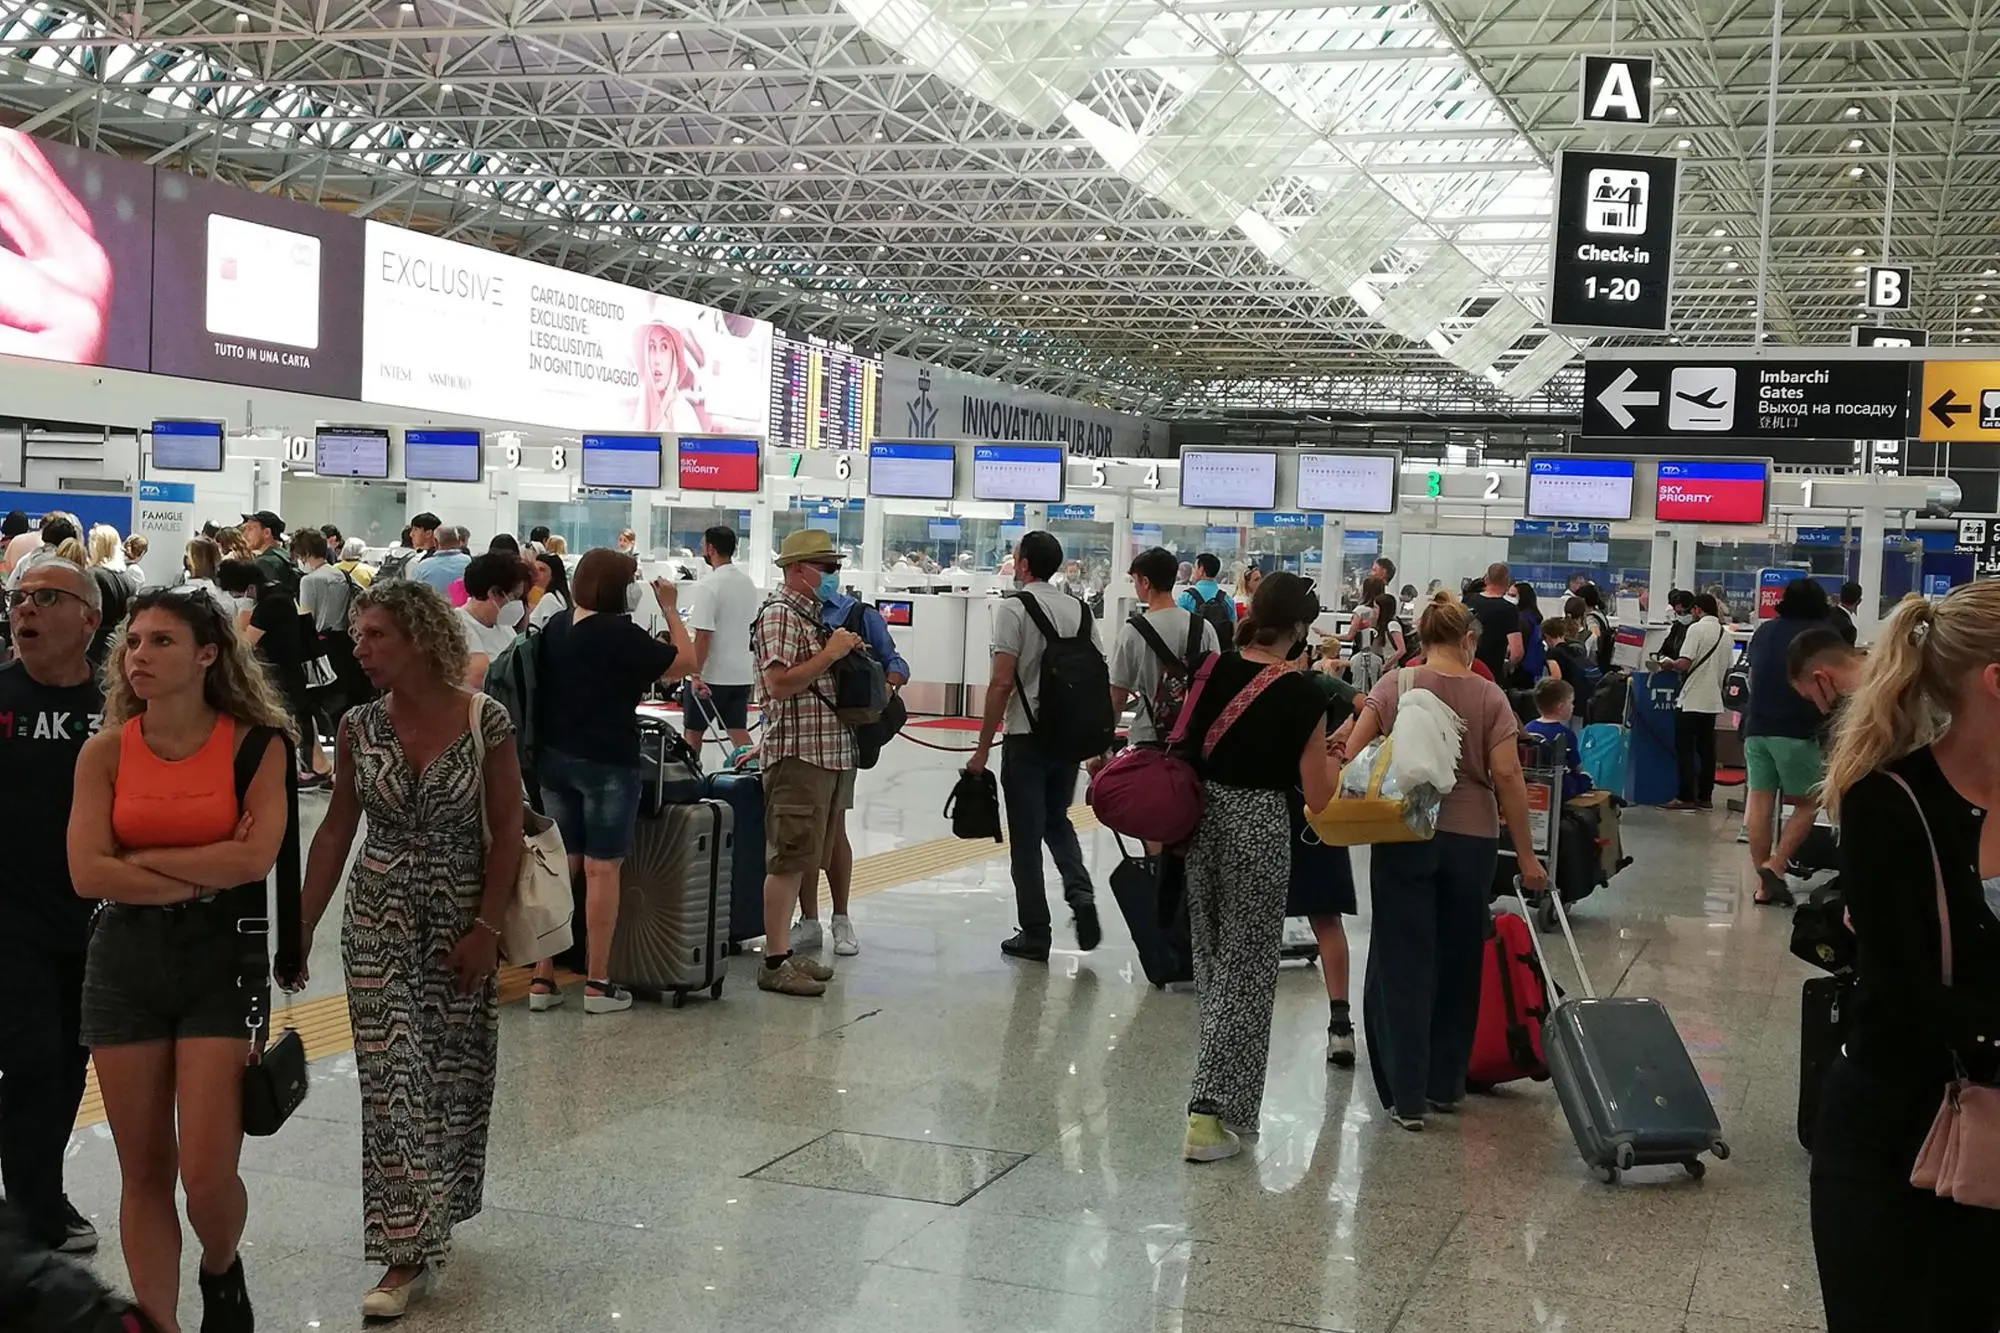 Turisti in fila nei terminal in attesa di imbarcarsi (Ansa)